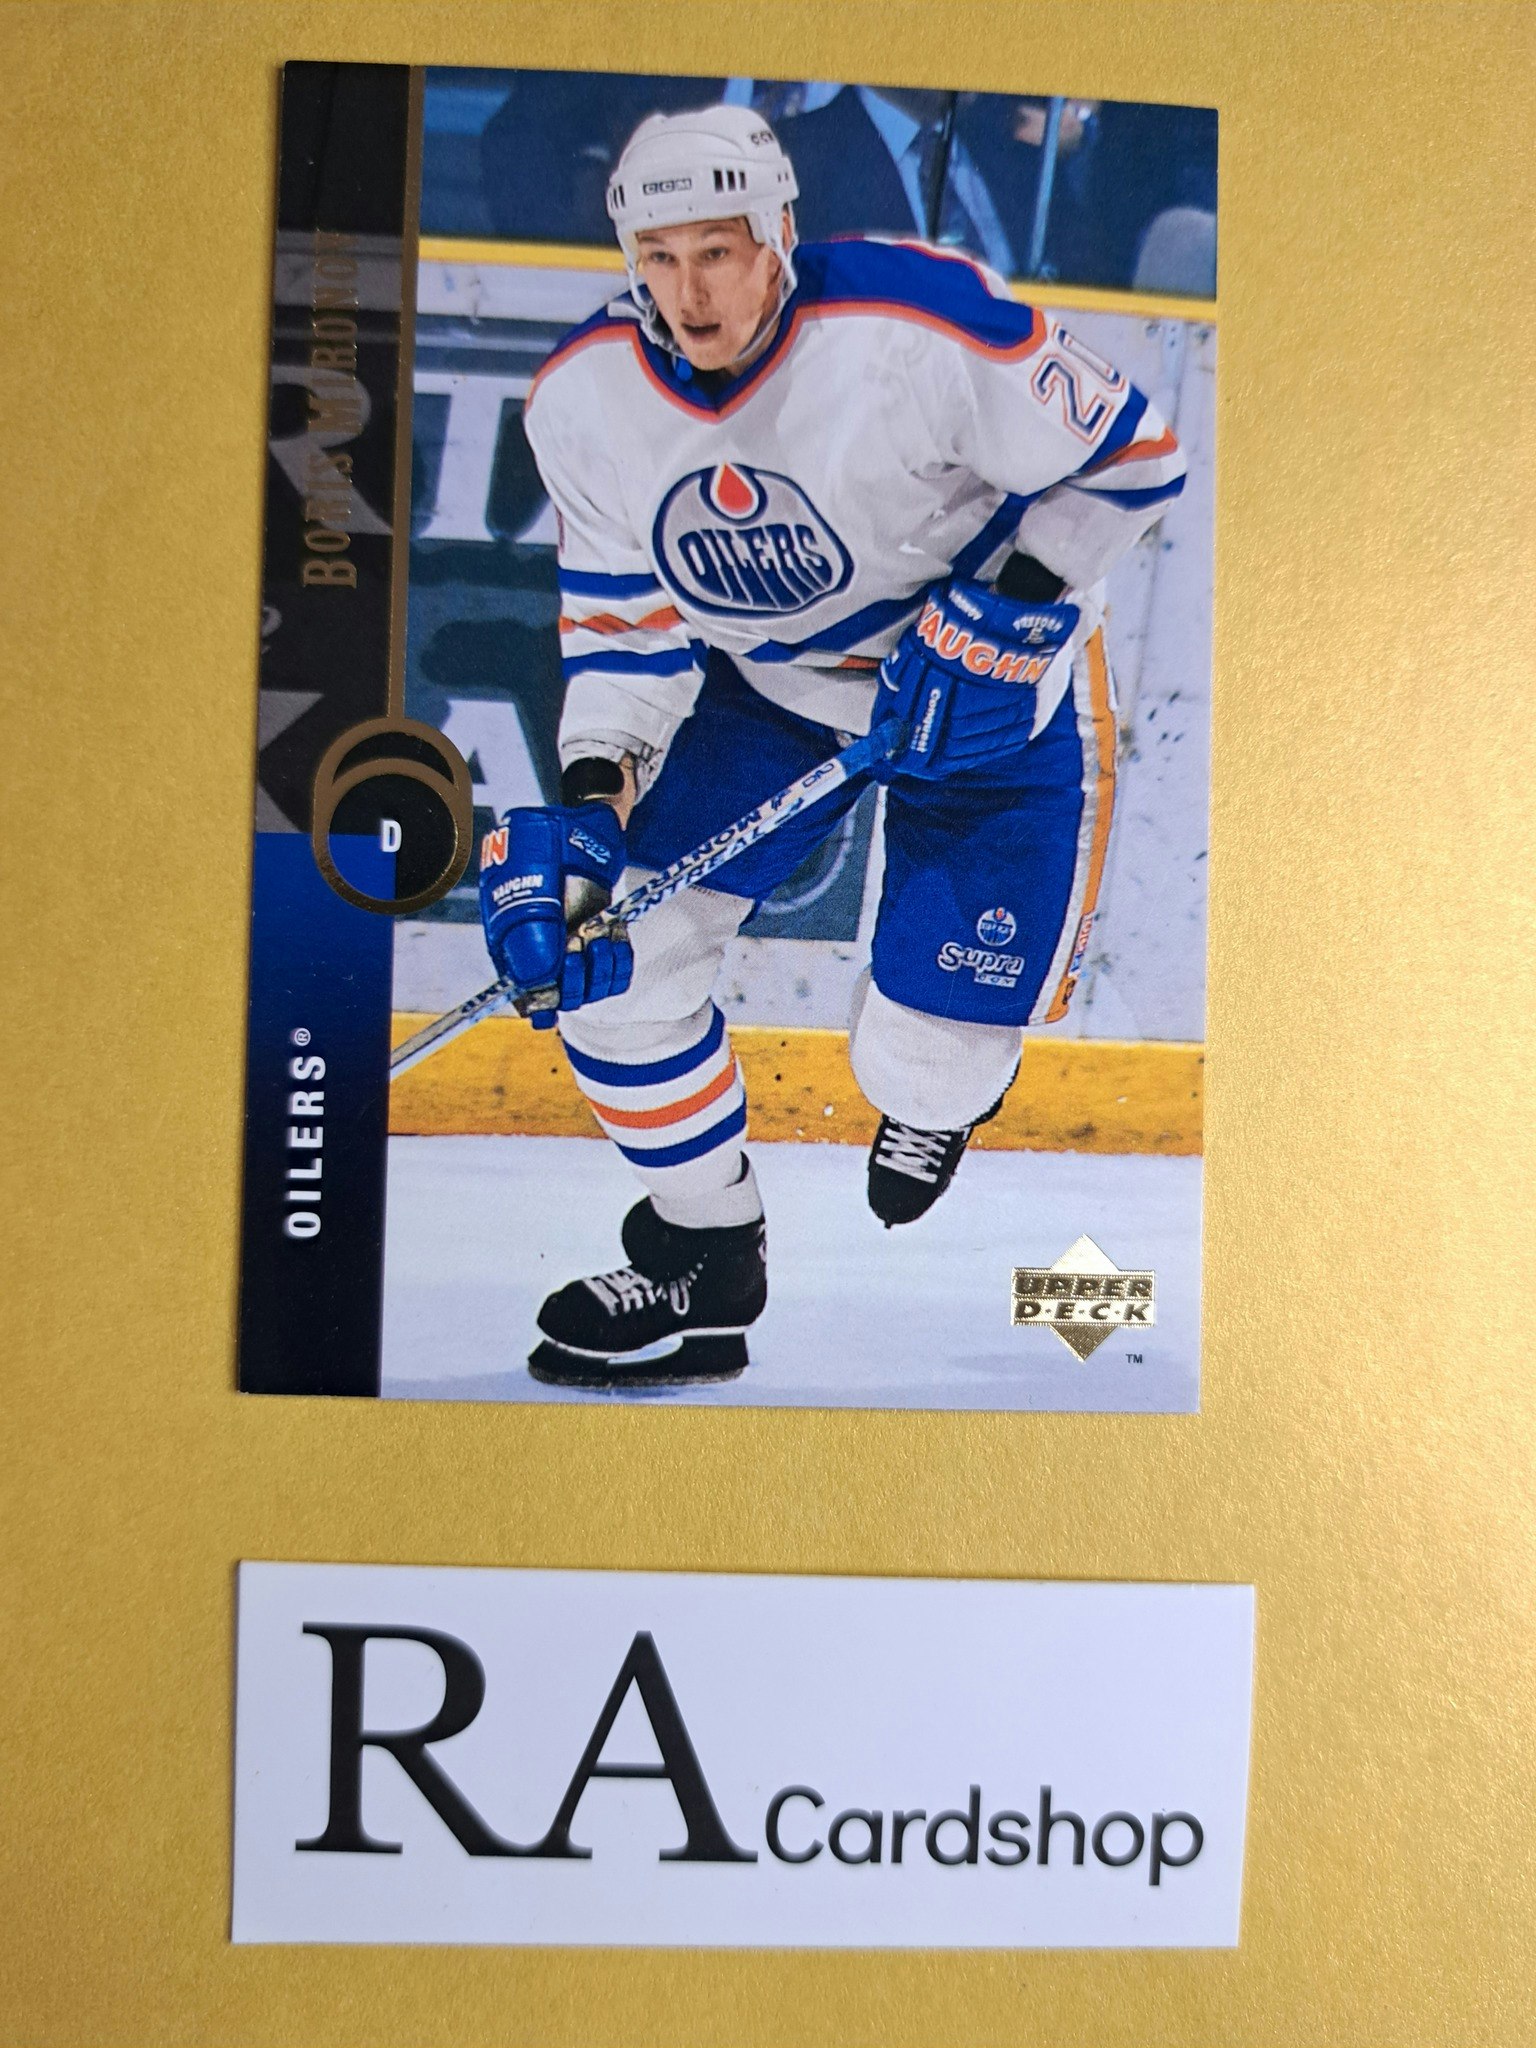 Boris Mirinov 94-95 Upper Deck #172 NHL Hockey